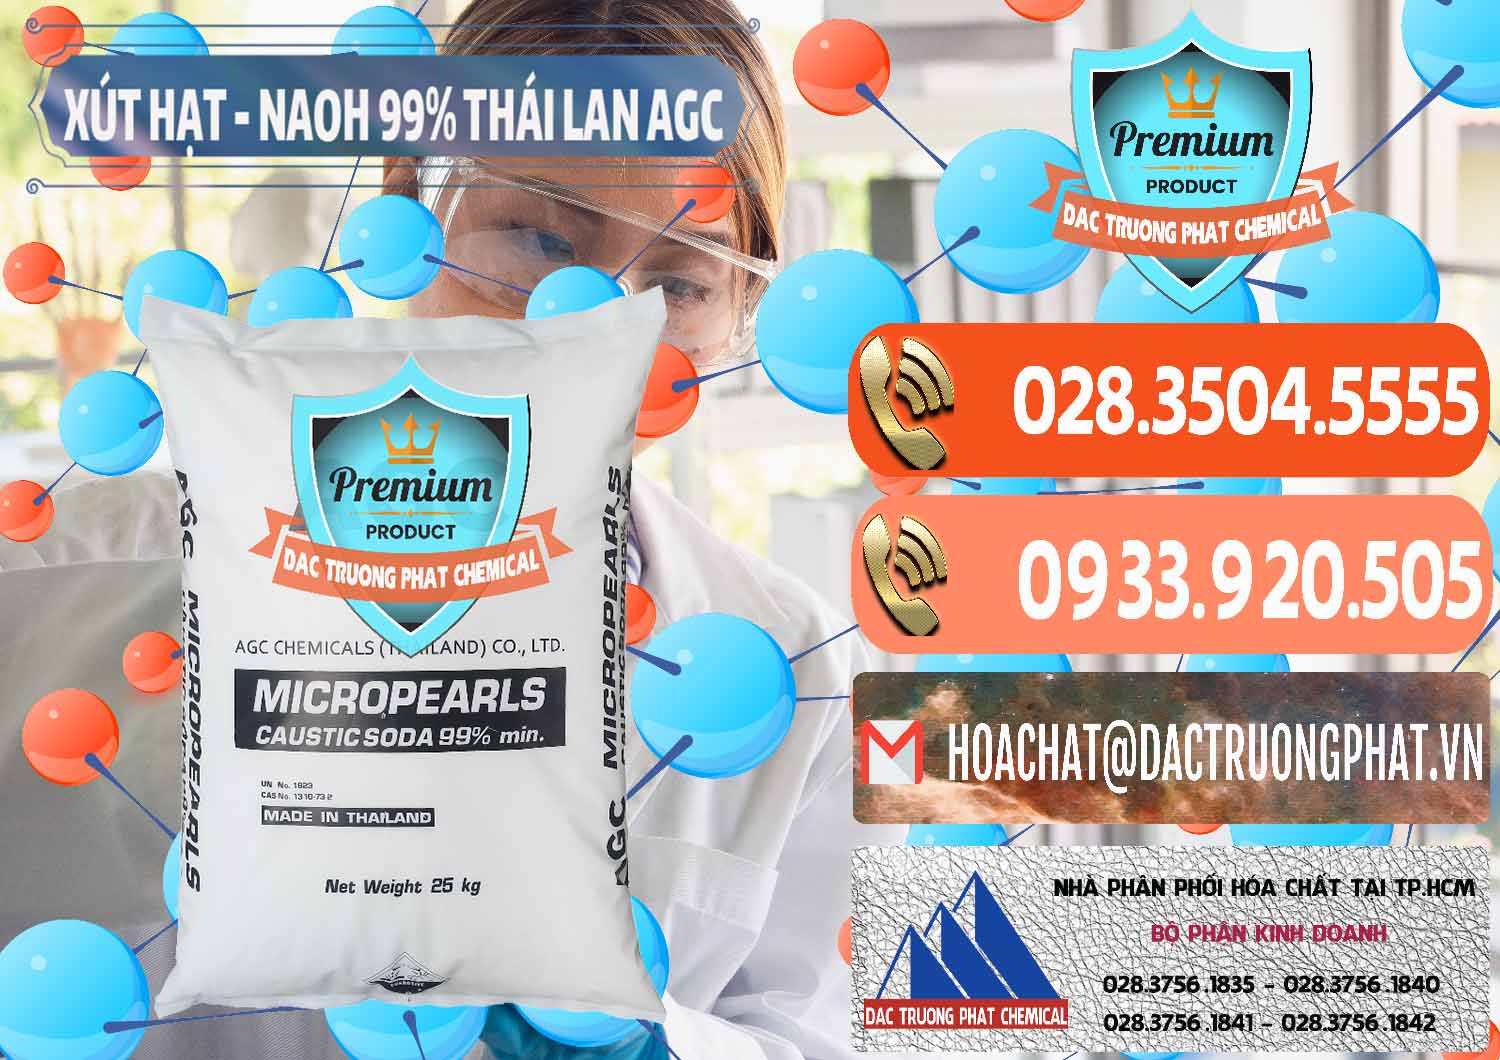 Cty chuyên phân phối & bán Xút Hạt - NaOH Bột 99% AGC Thái Lan - 0168 - Chuyên phân phối ( cung cấp ) hóa chất tại TP.HCM - hoachatmientay.com